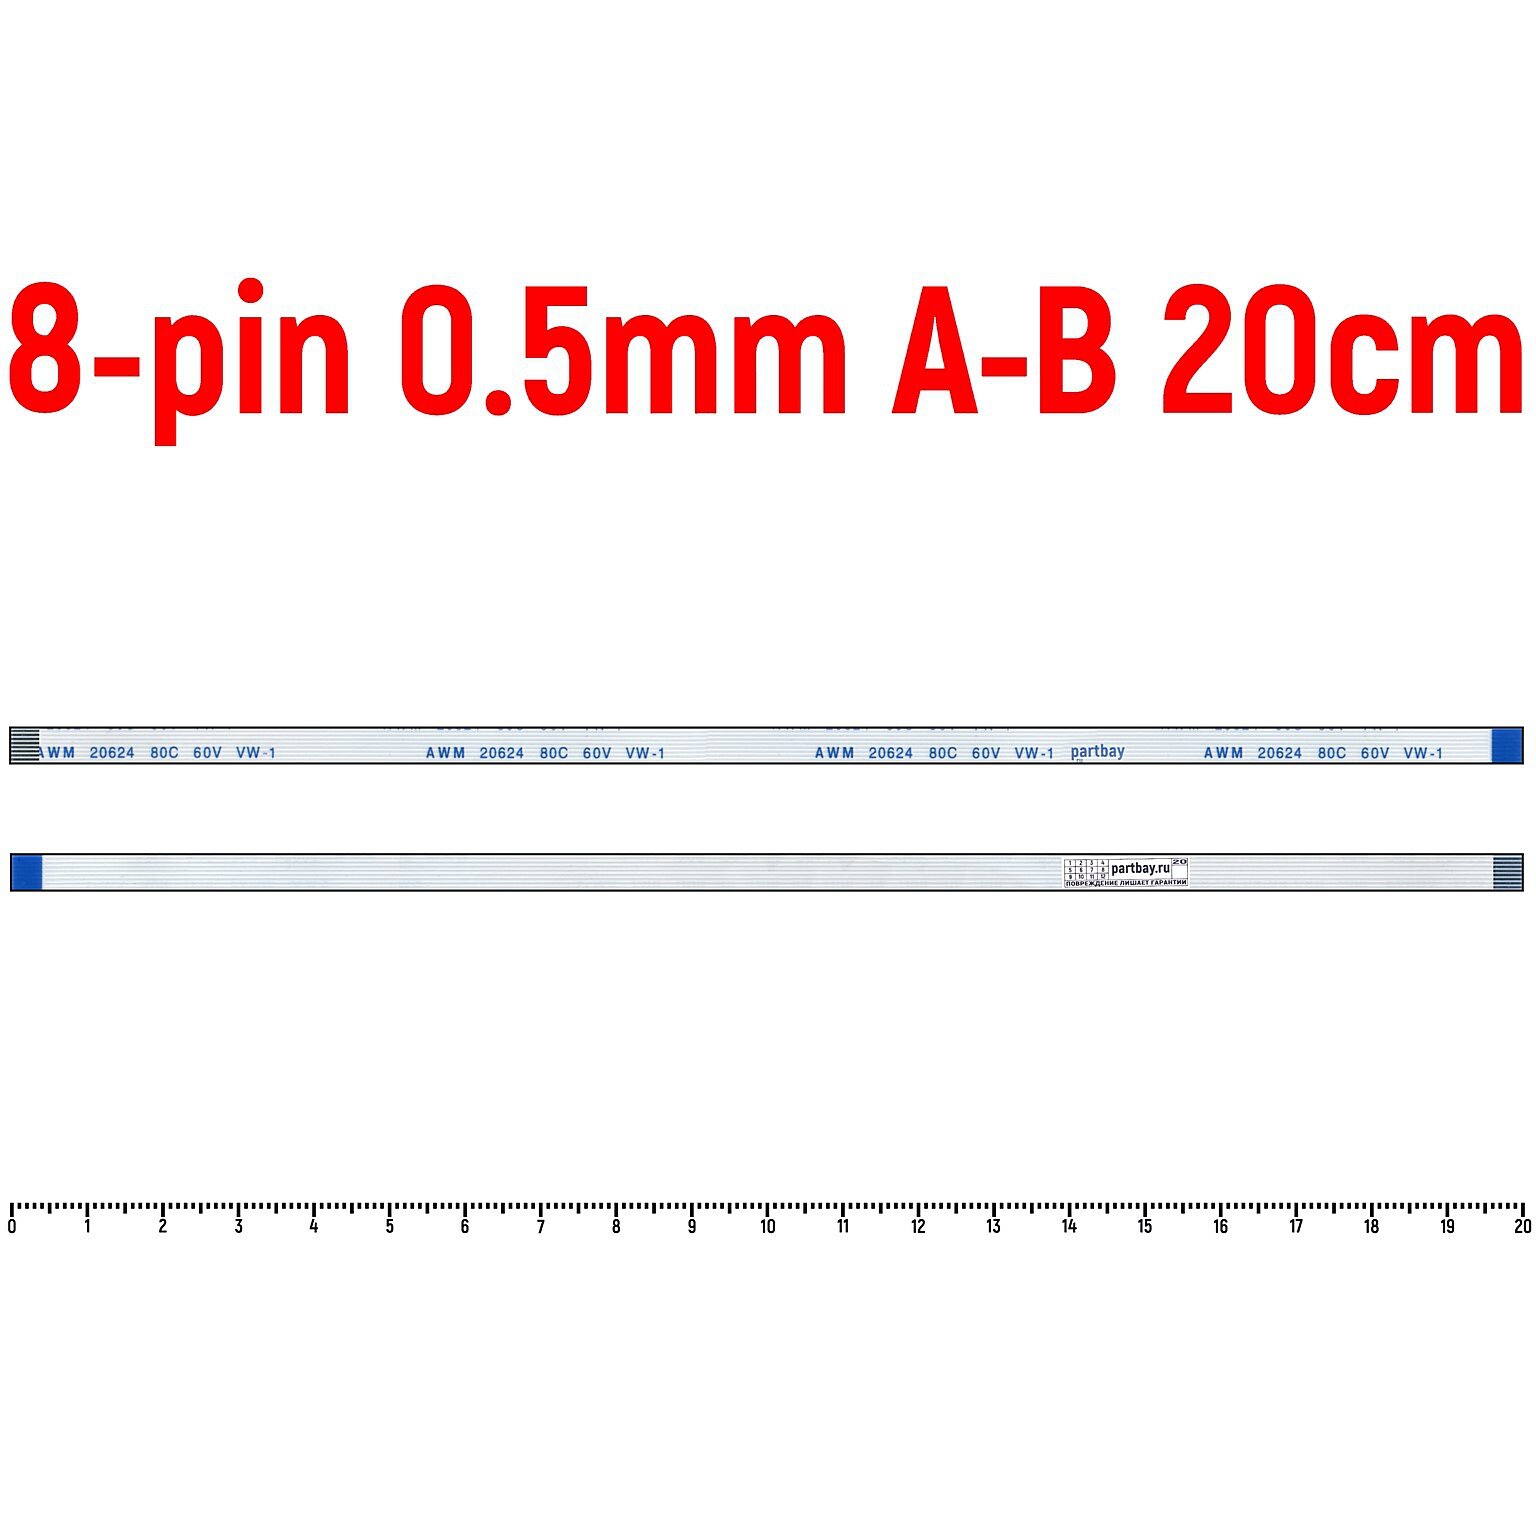 Шлейф тачпада для ноутбука Asus F550LB FFC 8-pin Шаг 0.5mm Длина 20cm Обратный A-B AWM 20624 80C 60V VW-1